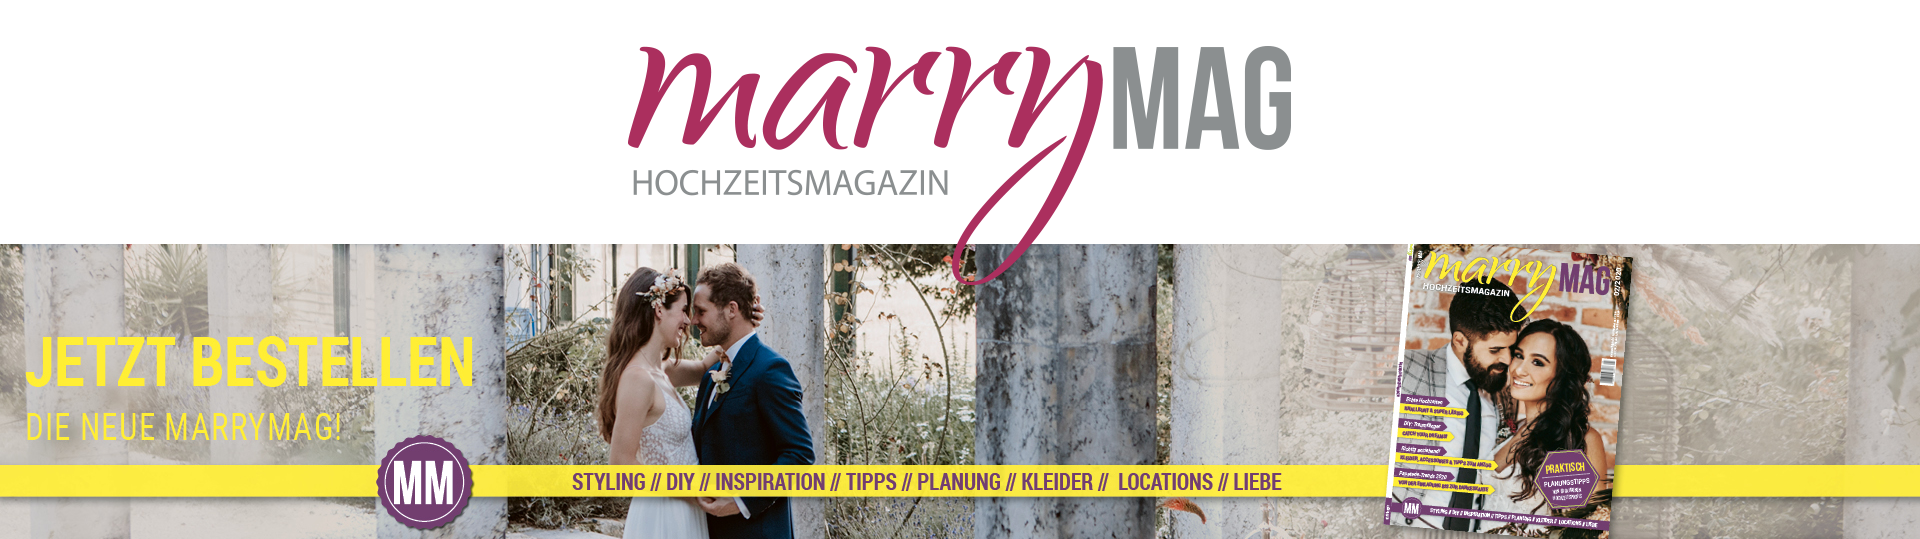 Hochzeitsblog marryMAG | Der Hochzeitsblog